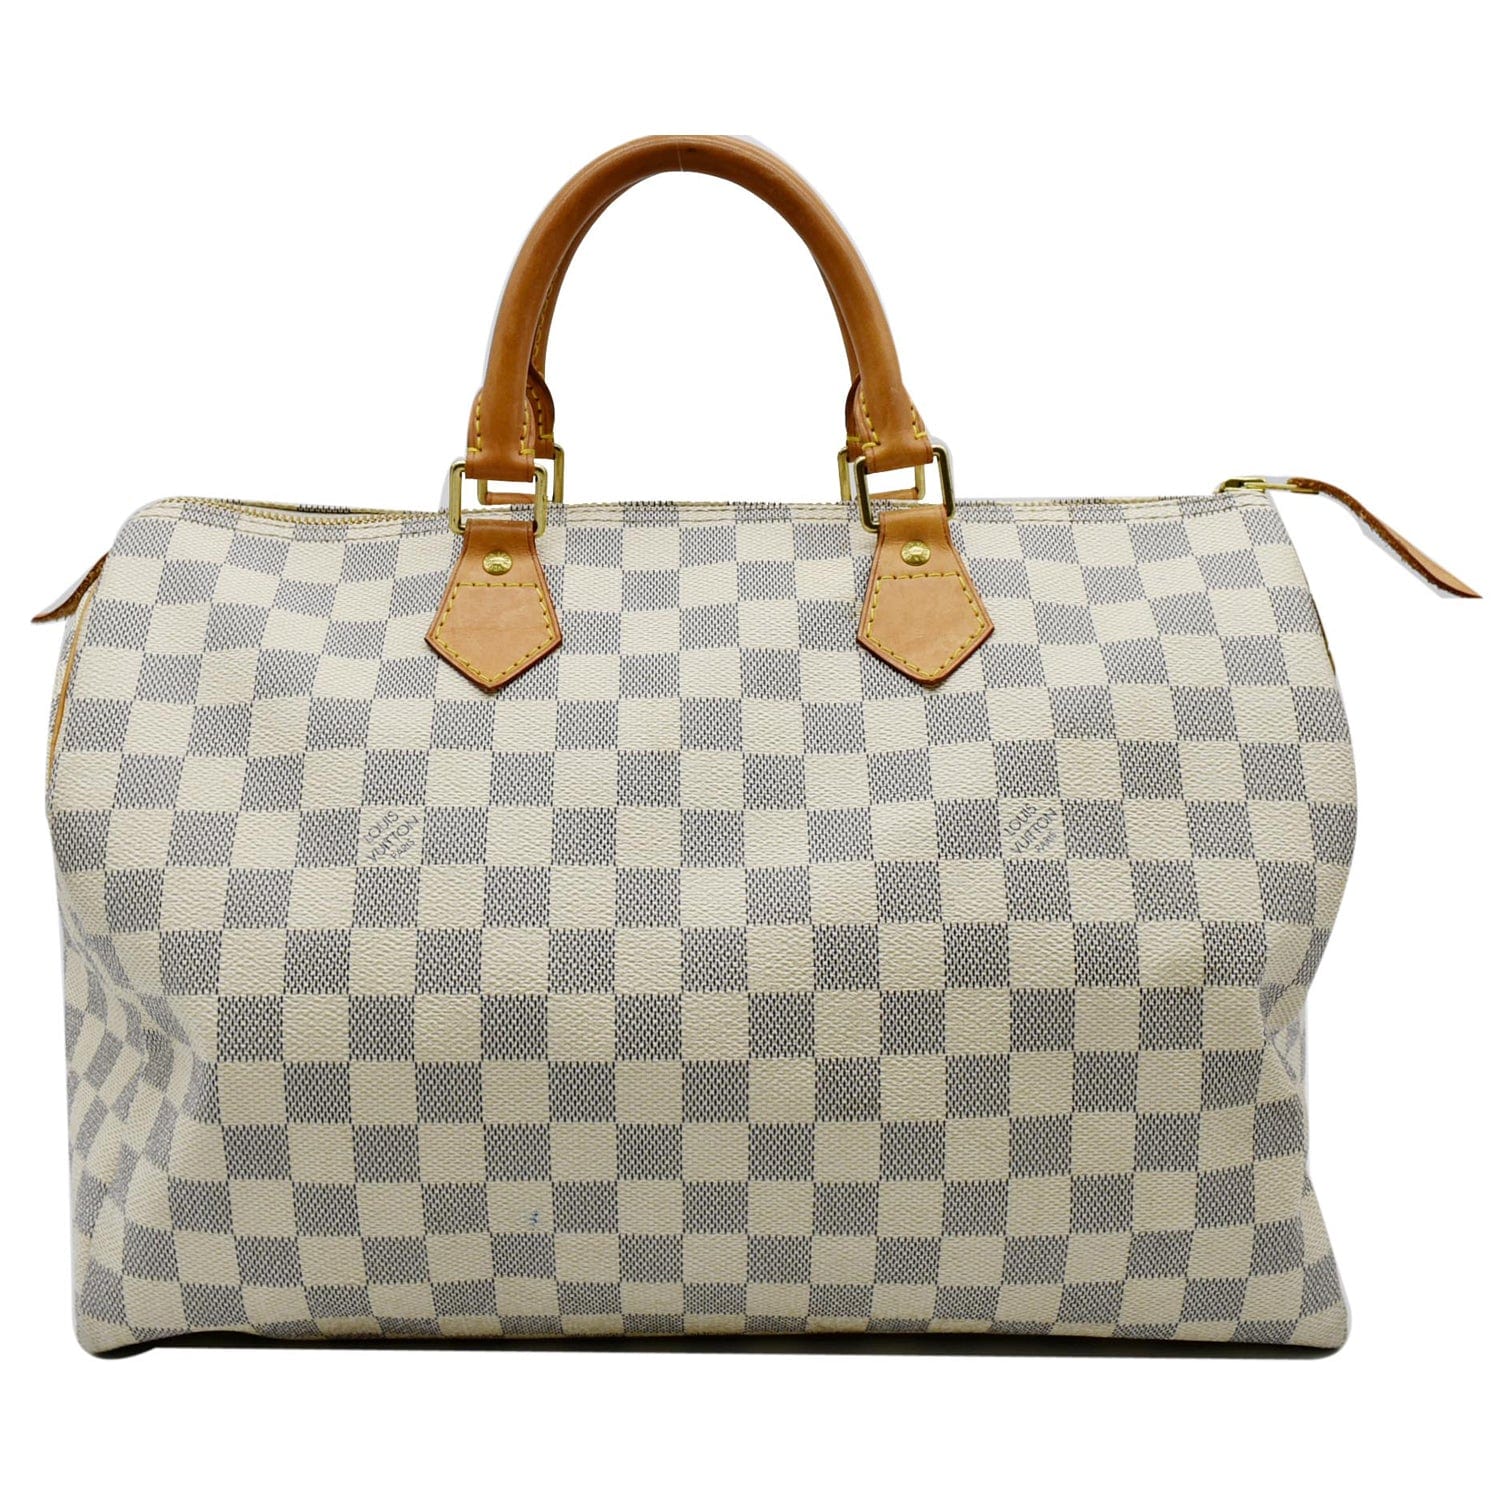 Louis Vuitton, Bags, Louis Vuitton Speedy 35 Handbag Purse